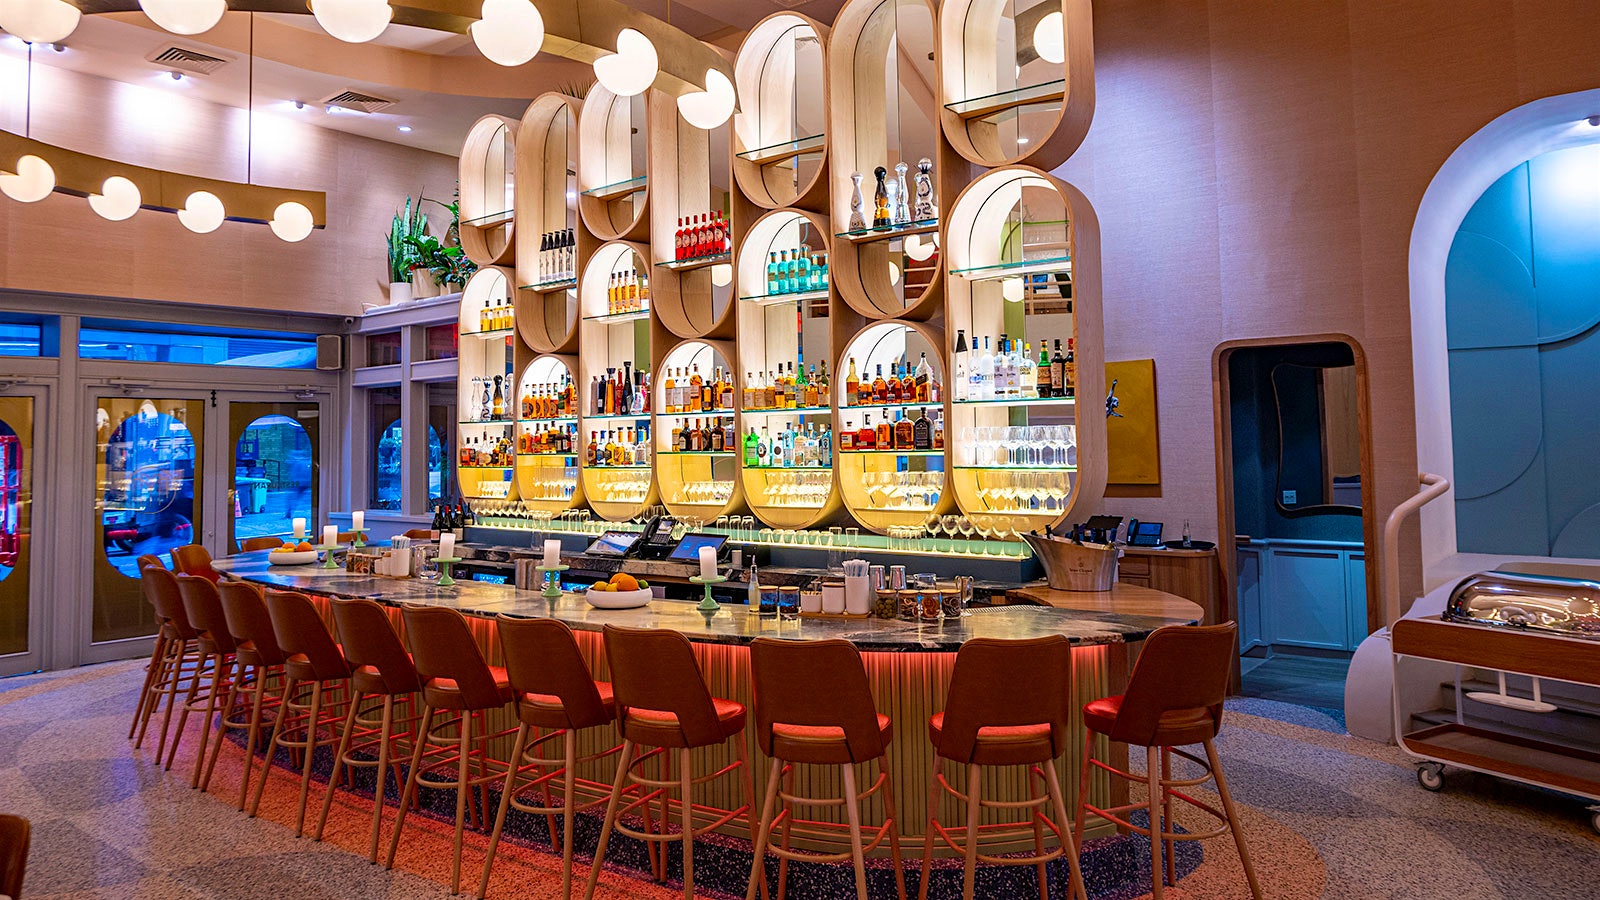  El Bar Monterey curvo está brillantemente iluminado con bombillas esféricas, con estantes retroiluminados en forma de huevo llenos de botellas de licor y vino y cristalería.